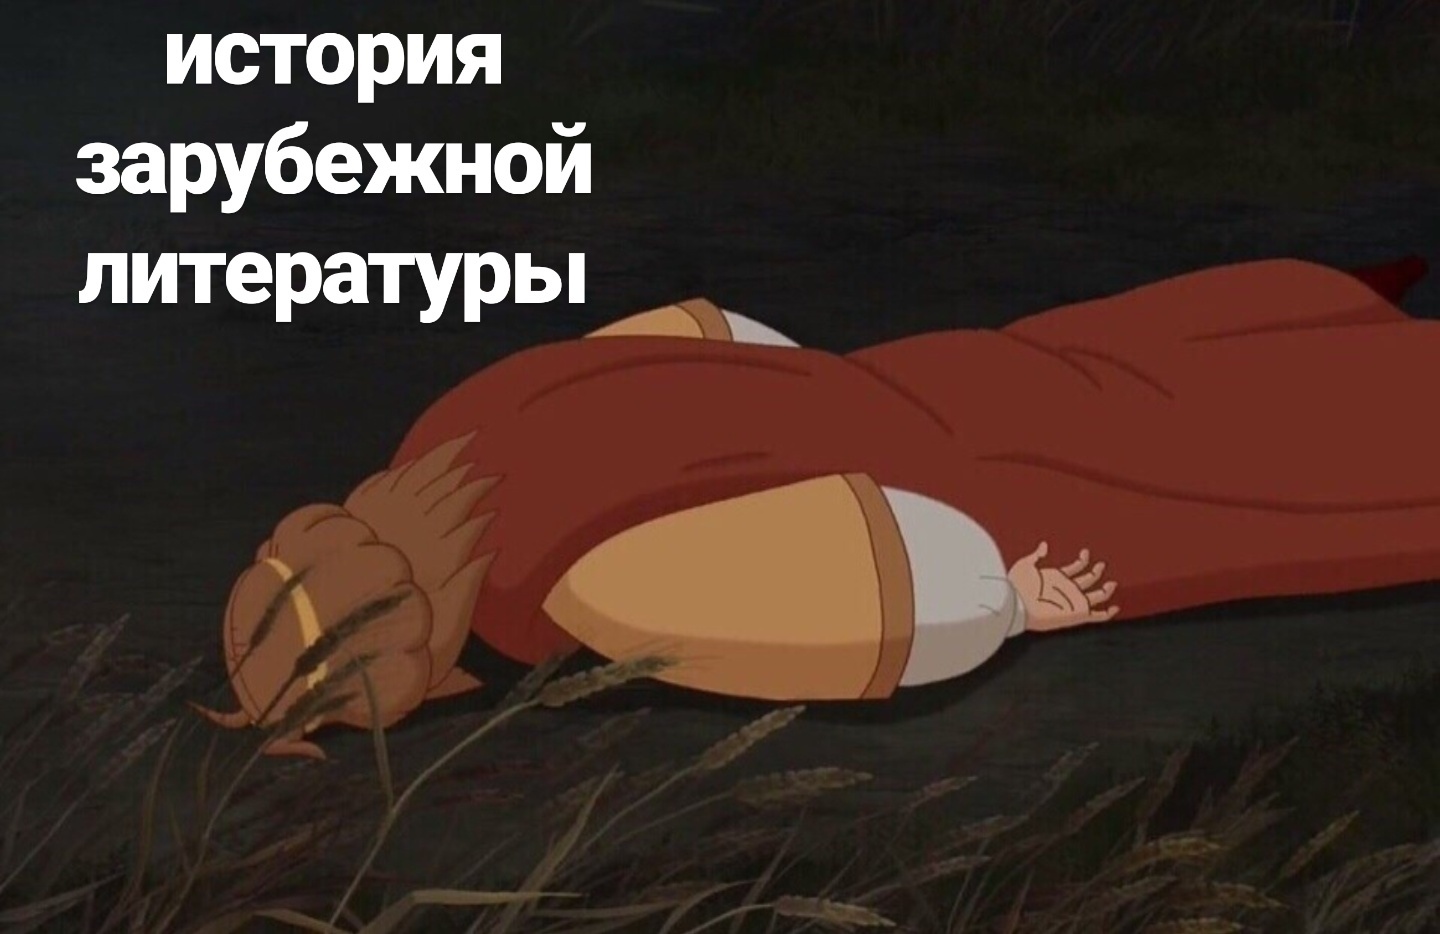 Князь Киевский из мультфильма лежит